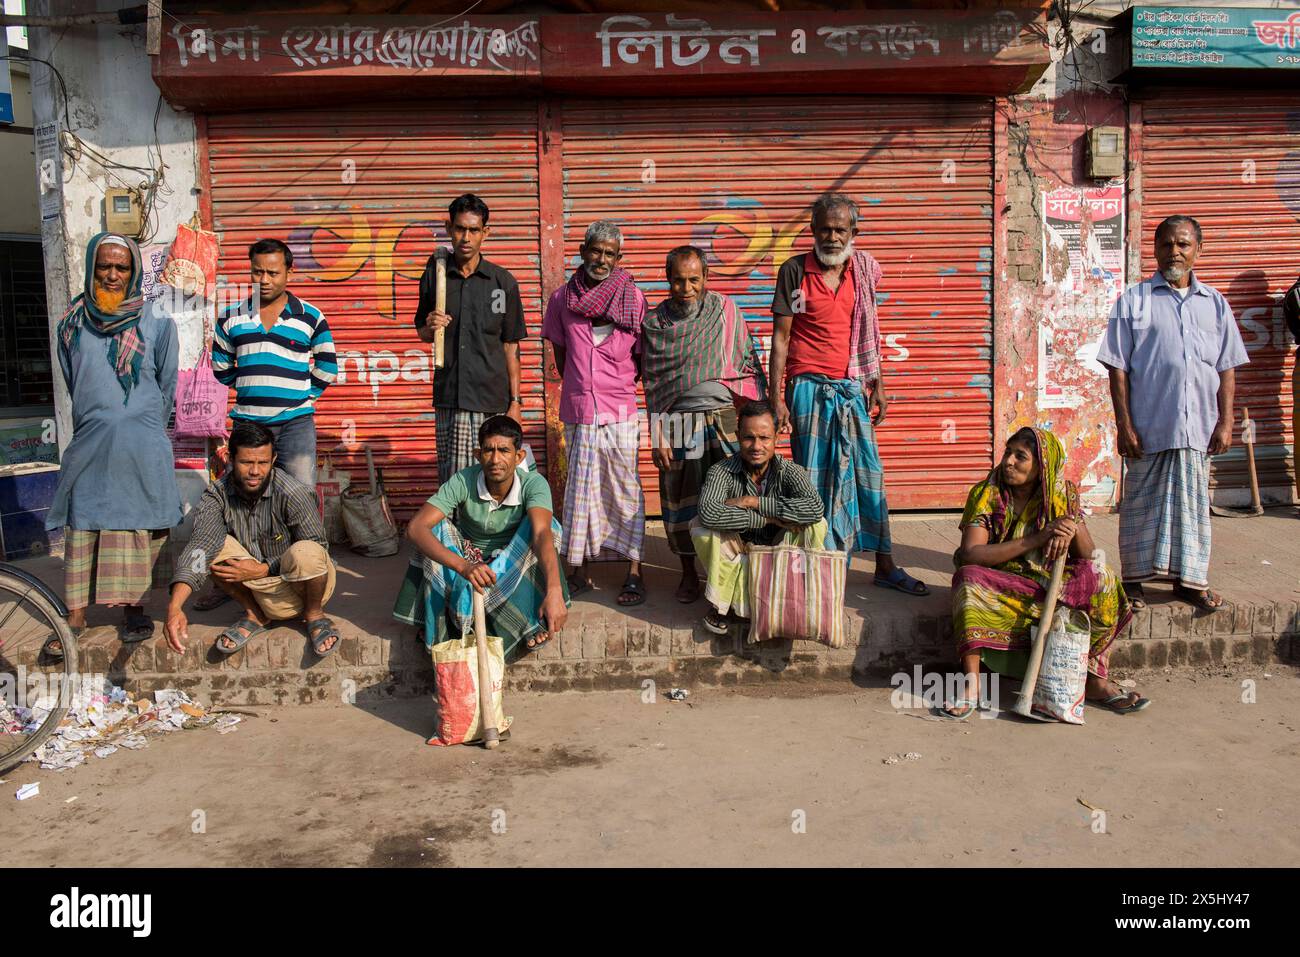 Bangladesch, Jhenaidah. Tagelöhner mit ihren Werkzeugen, Männer und Frauen, stehen am Straßenrand und suchen Arbeit. (Nur für redaktionelle Zwecke) Stockfoto